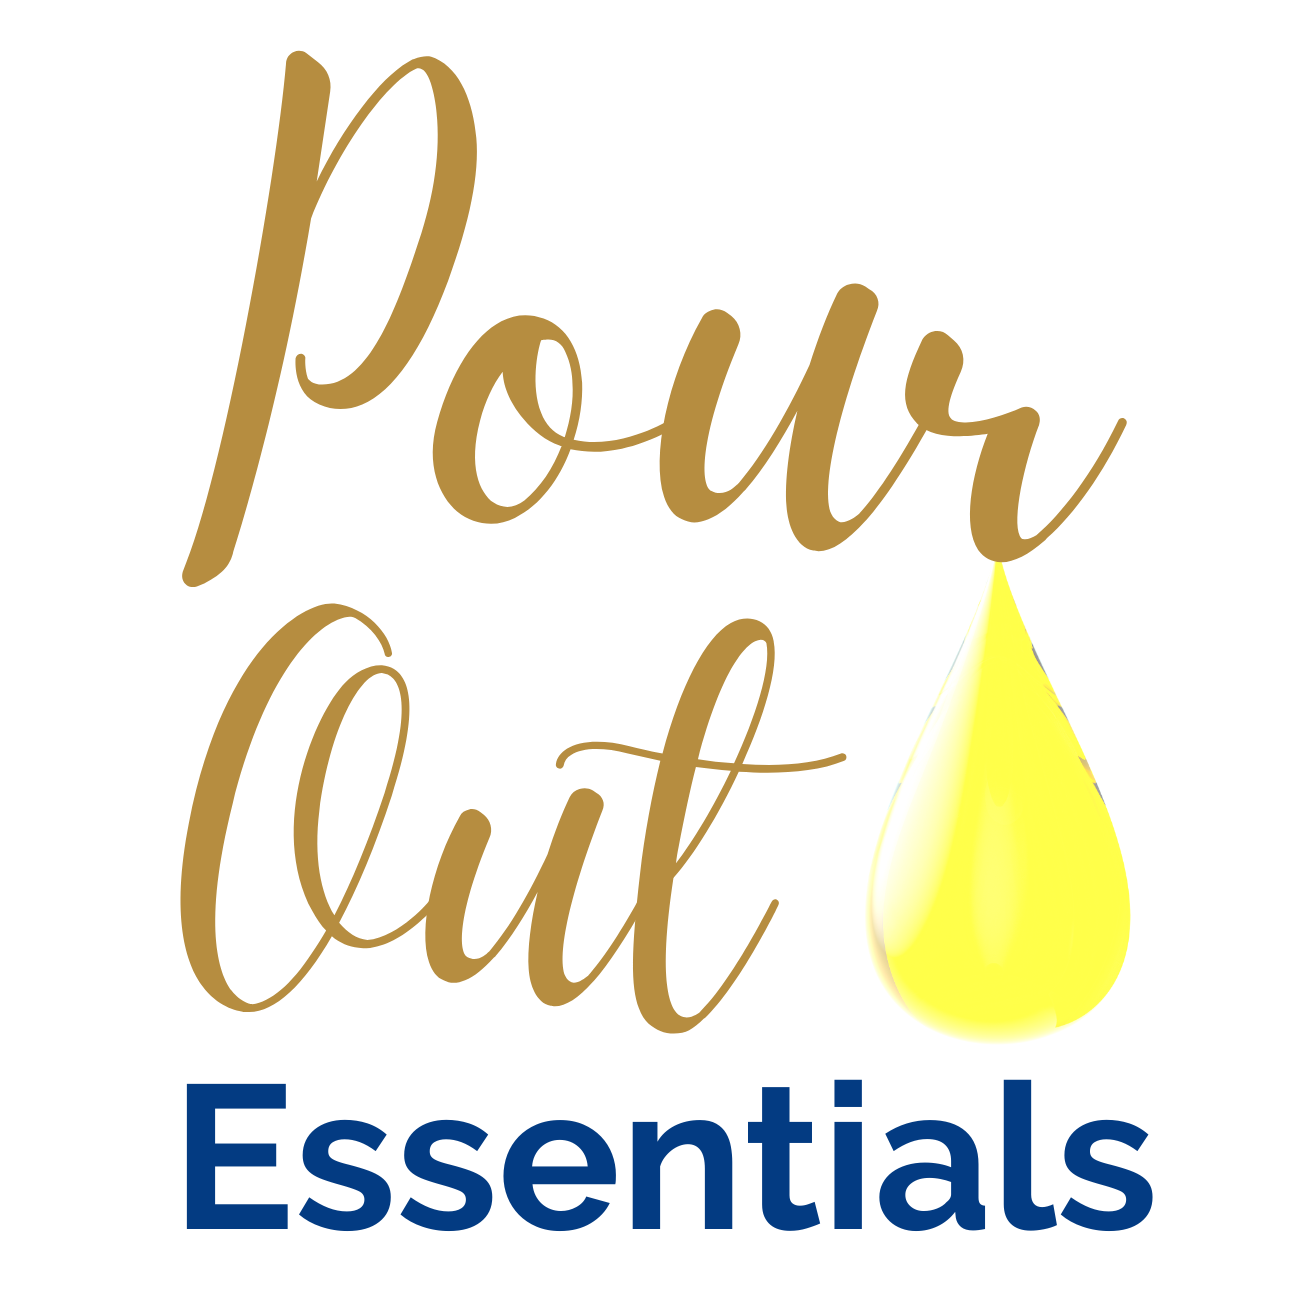 Pour Out Essentials